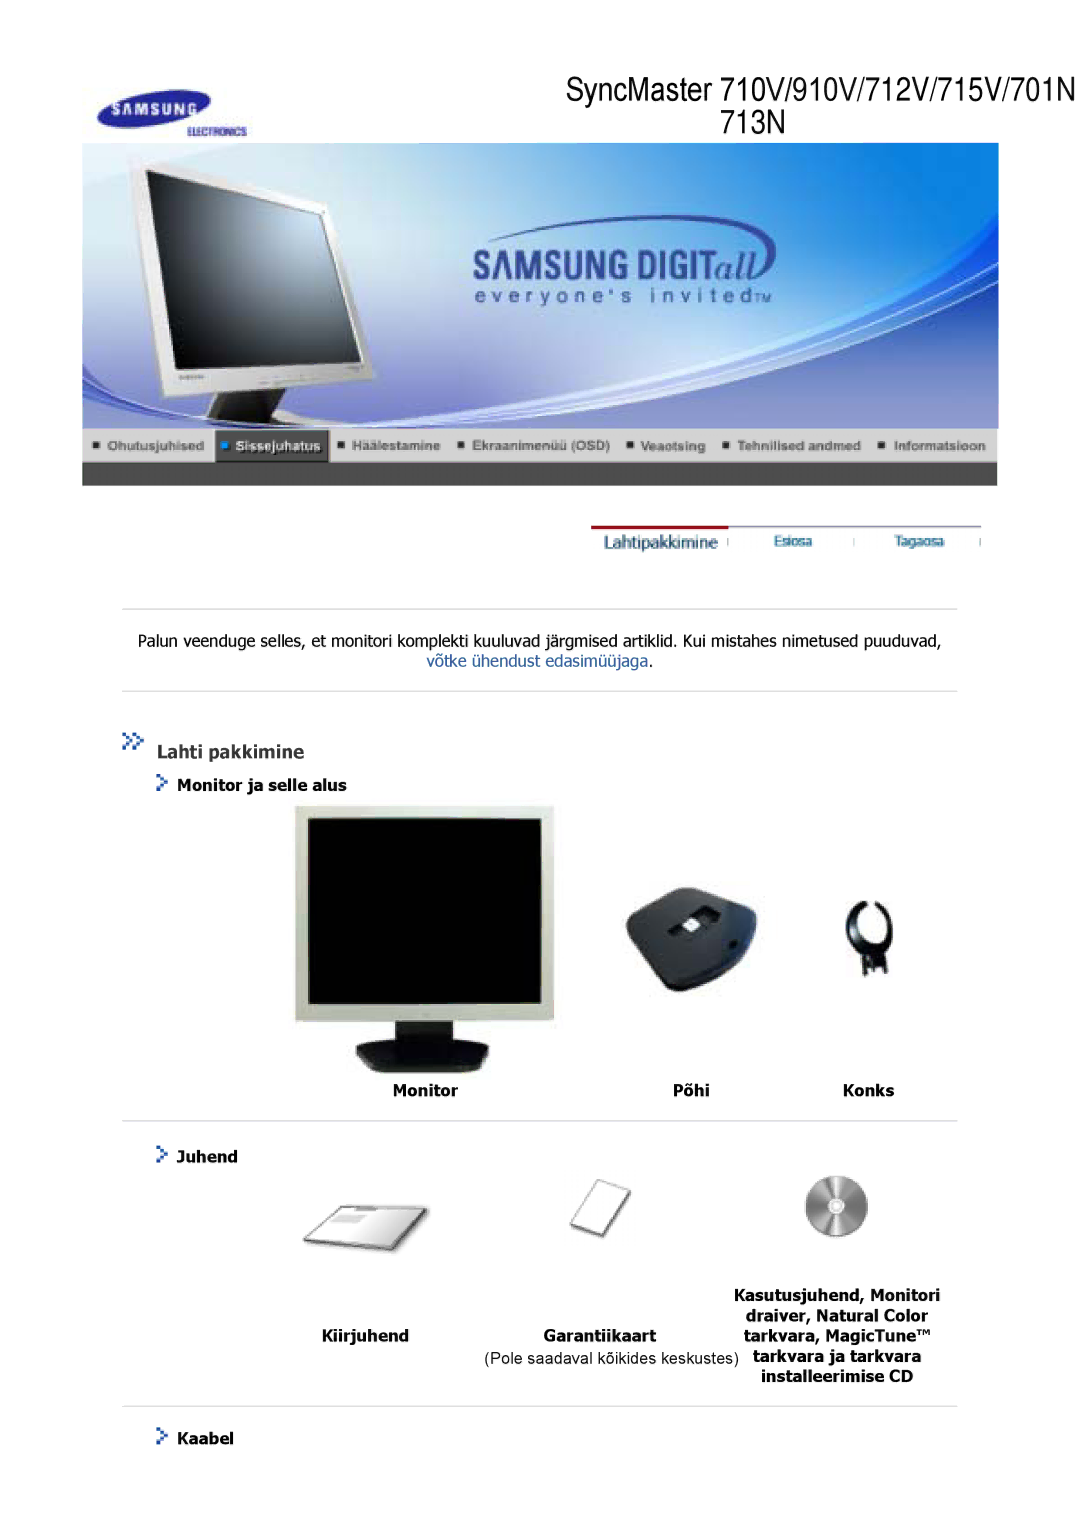 Samsung GS17VSSS/EDC, GS17VSSN/EDC, GS17CSSS/EDC manual Lahti pakkimine, Tarkvara ja tarkvara, Installeerimise CD, Kaabel 